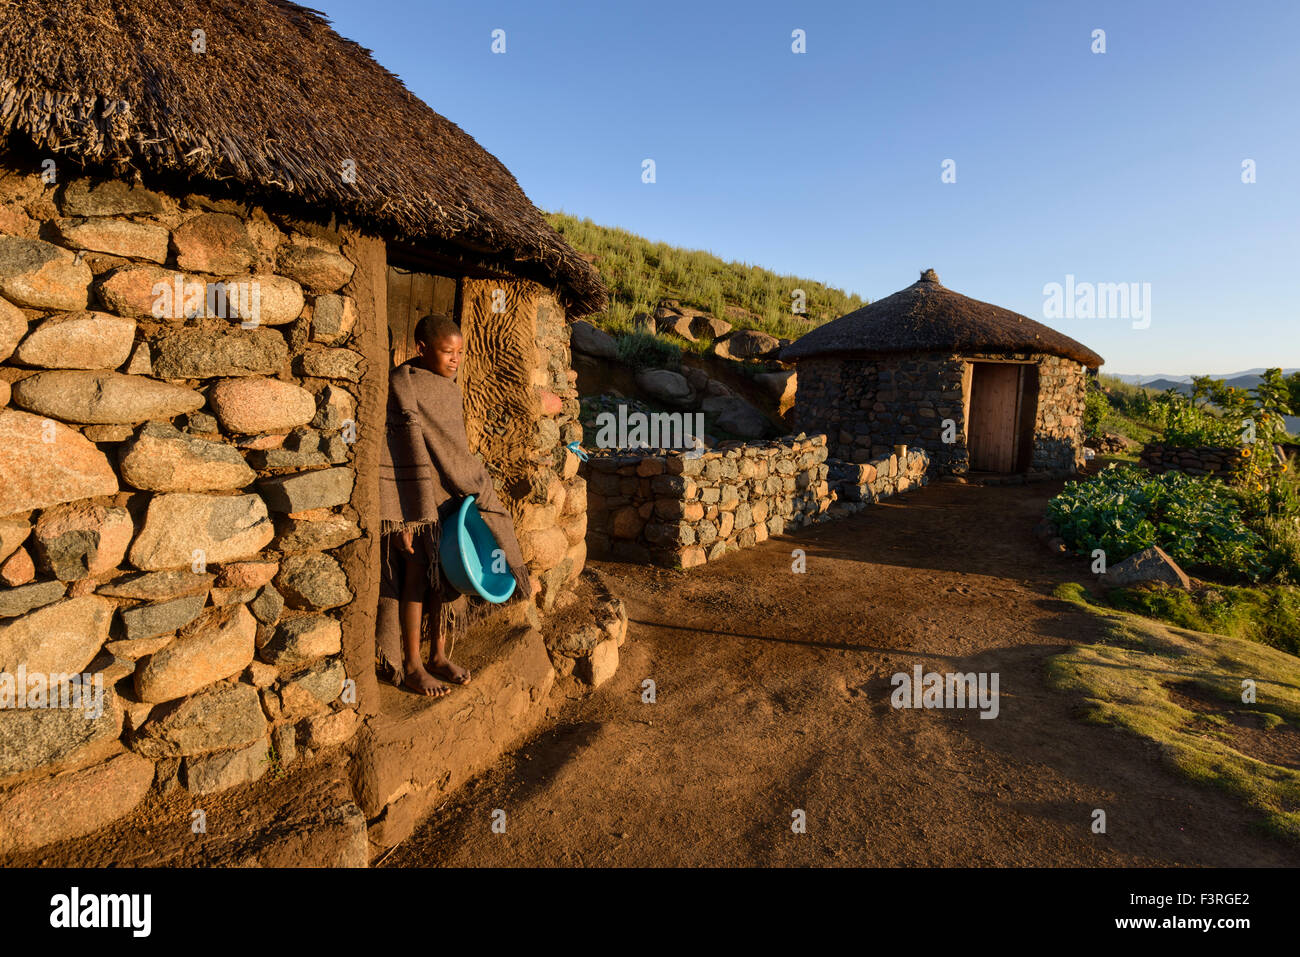 Basotho shepherd in traditional dwelling, Lesotho, Africa Stock Photo